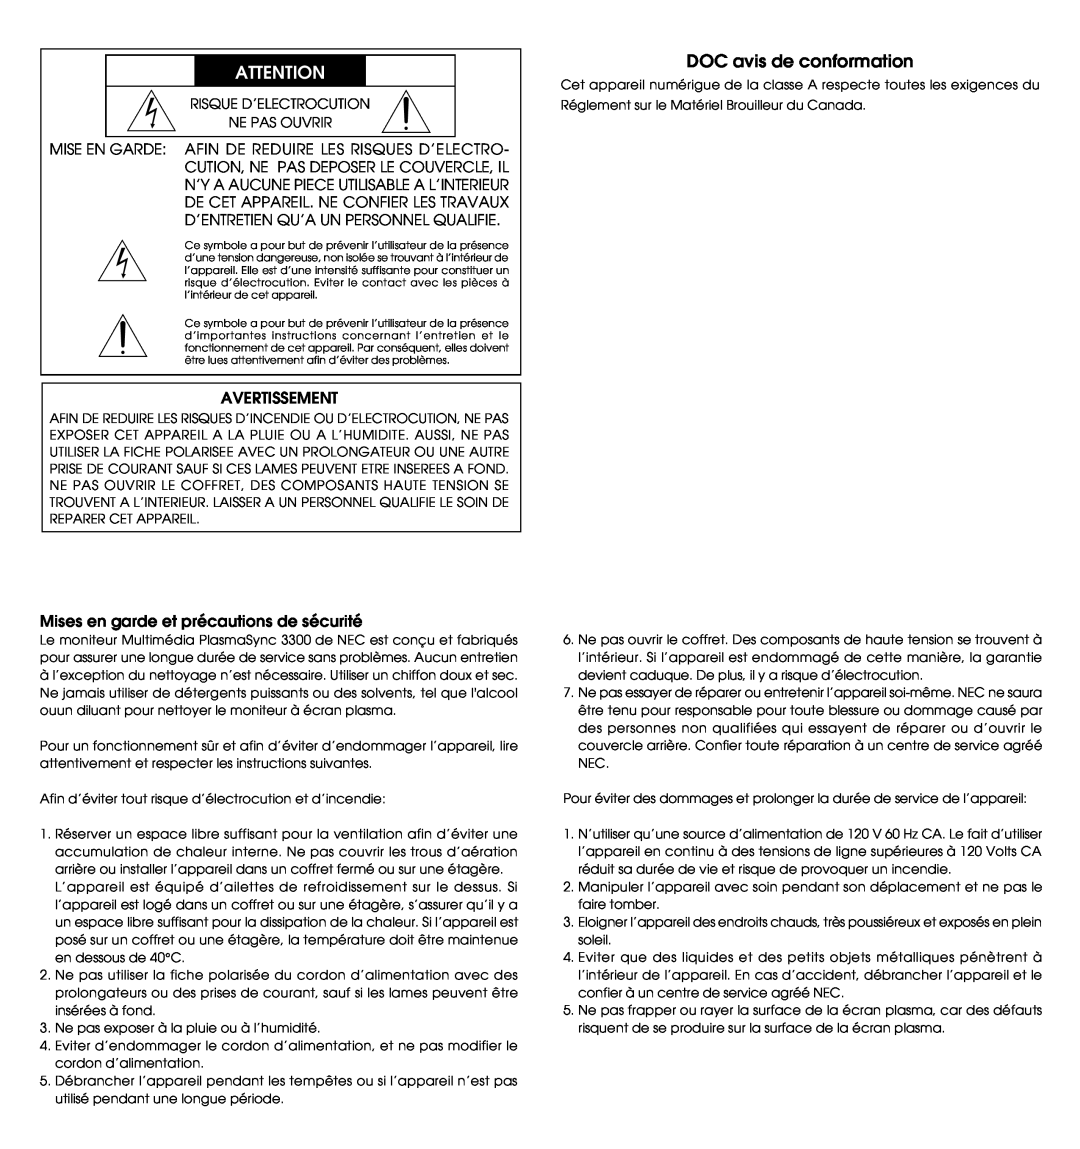 NEC PlasmaSync 3300 user manual DOC avis de conformation, Avertissement, Mises en garde et précautions de sécurité 